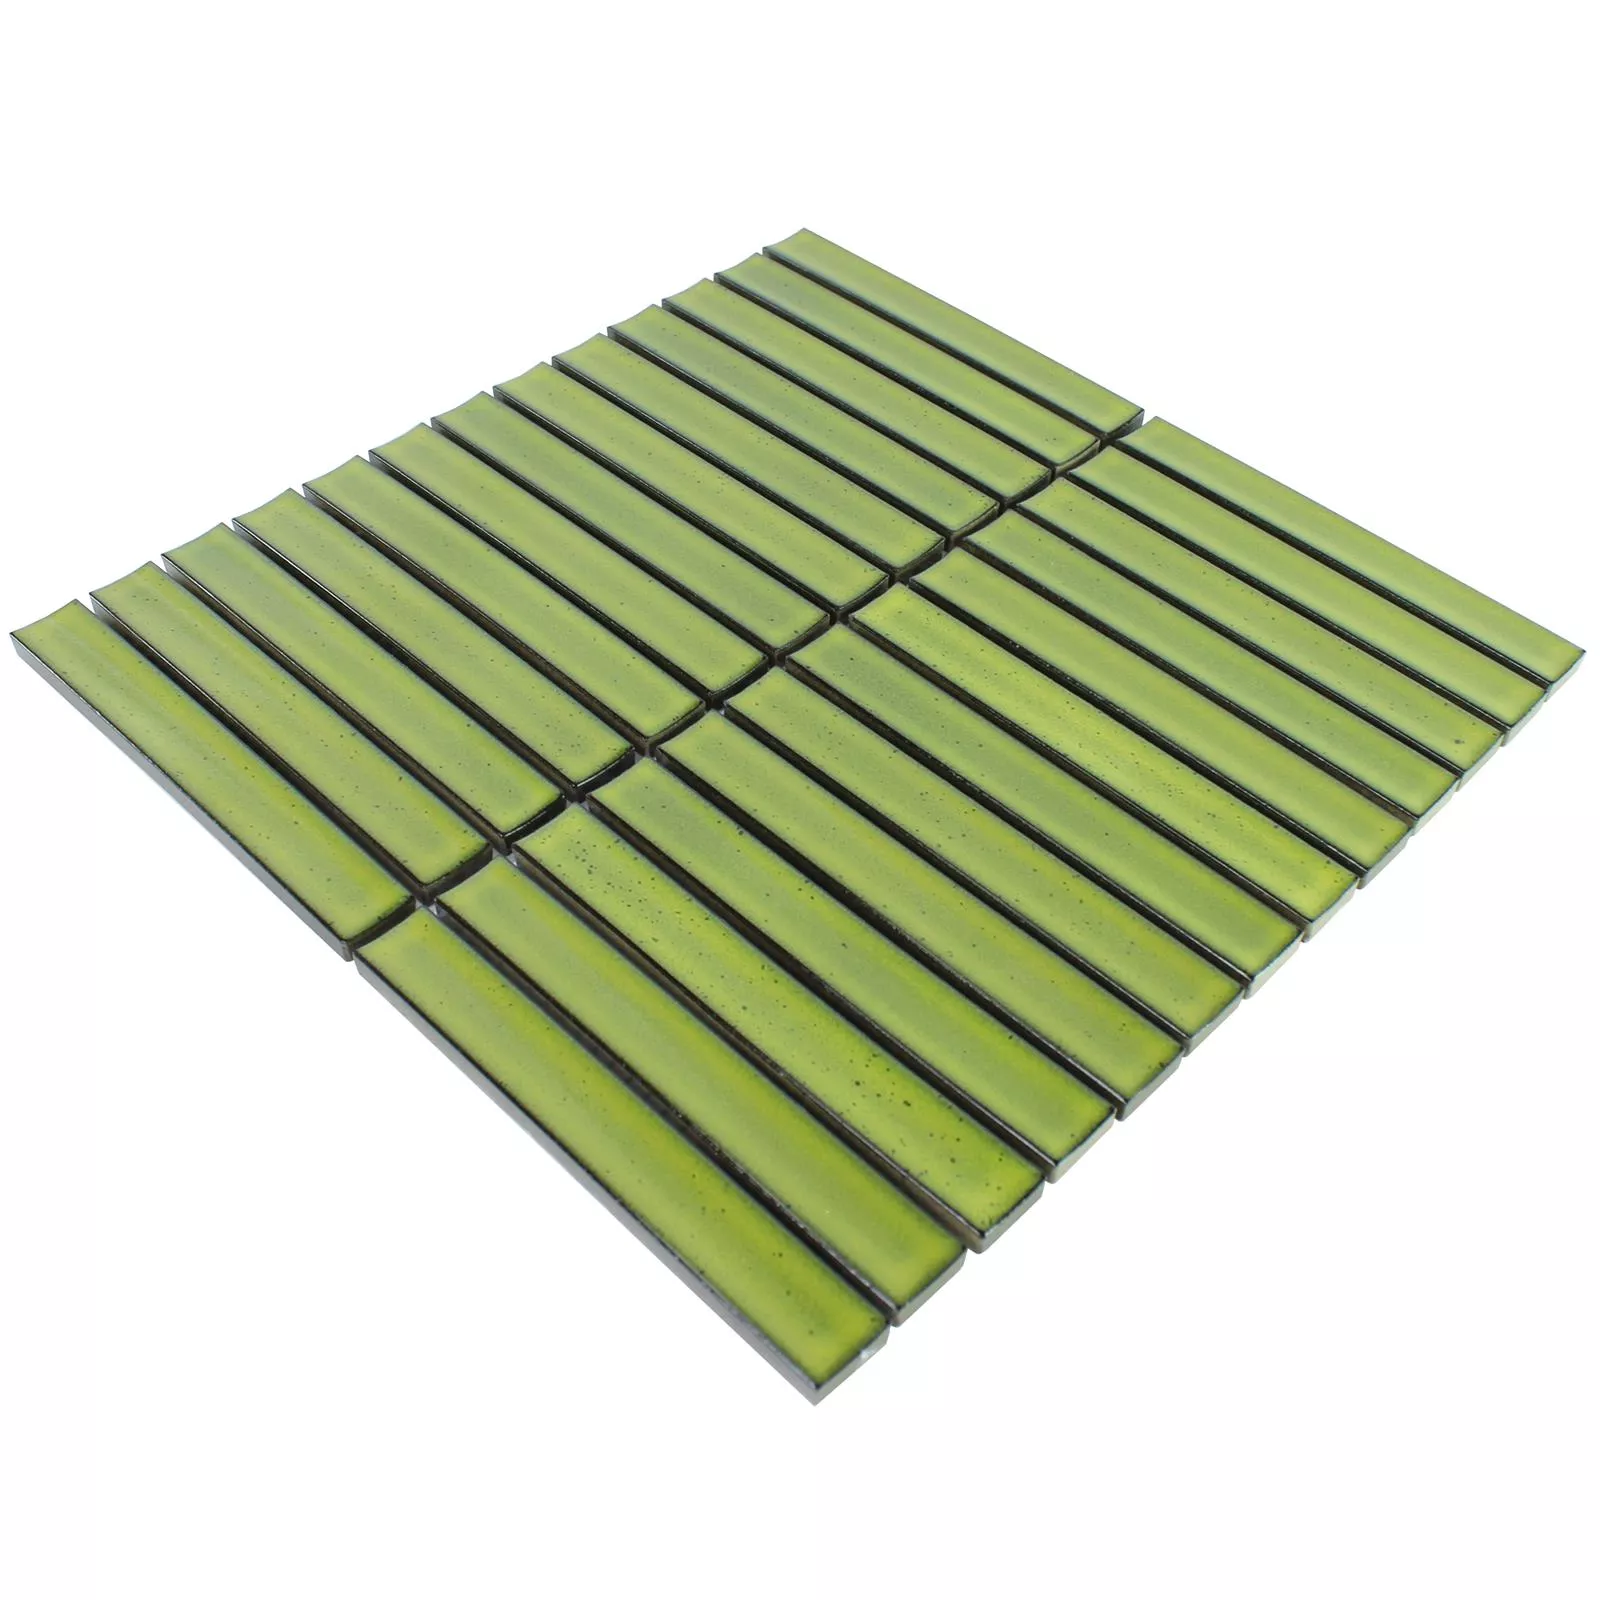 Sample Ceramic Mosaic Tiles Sticks Ontario Green